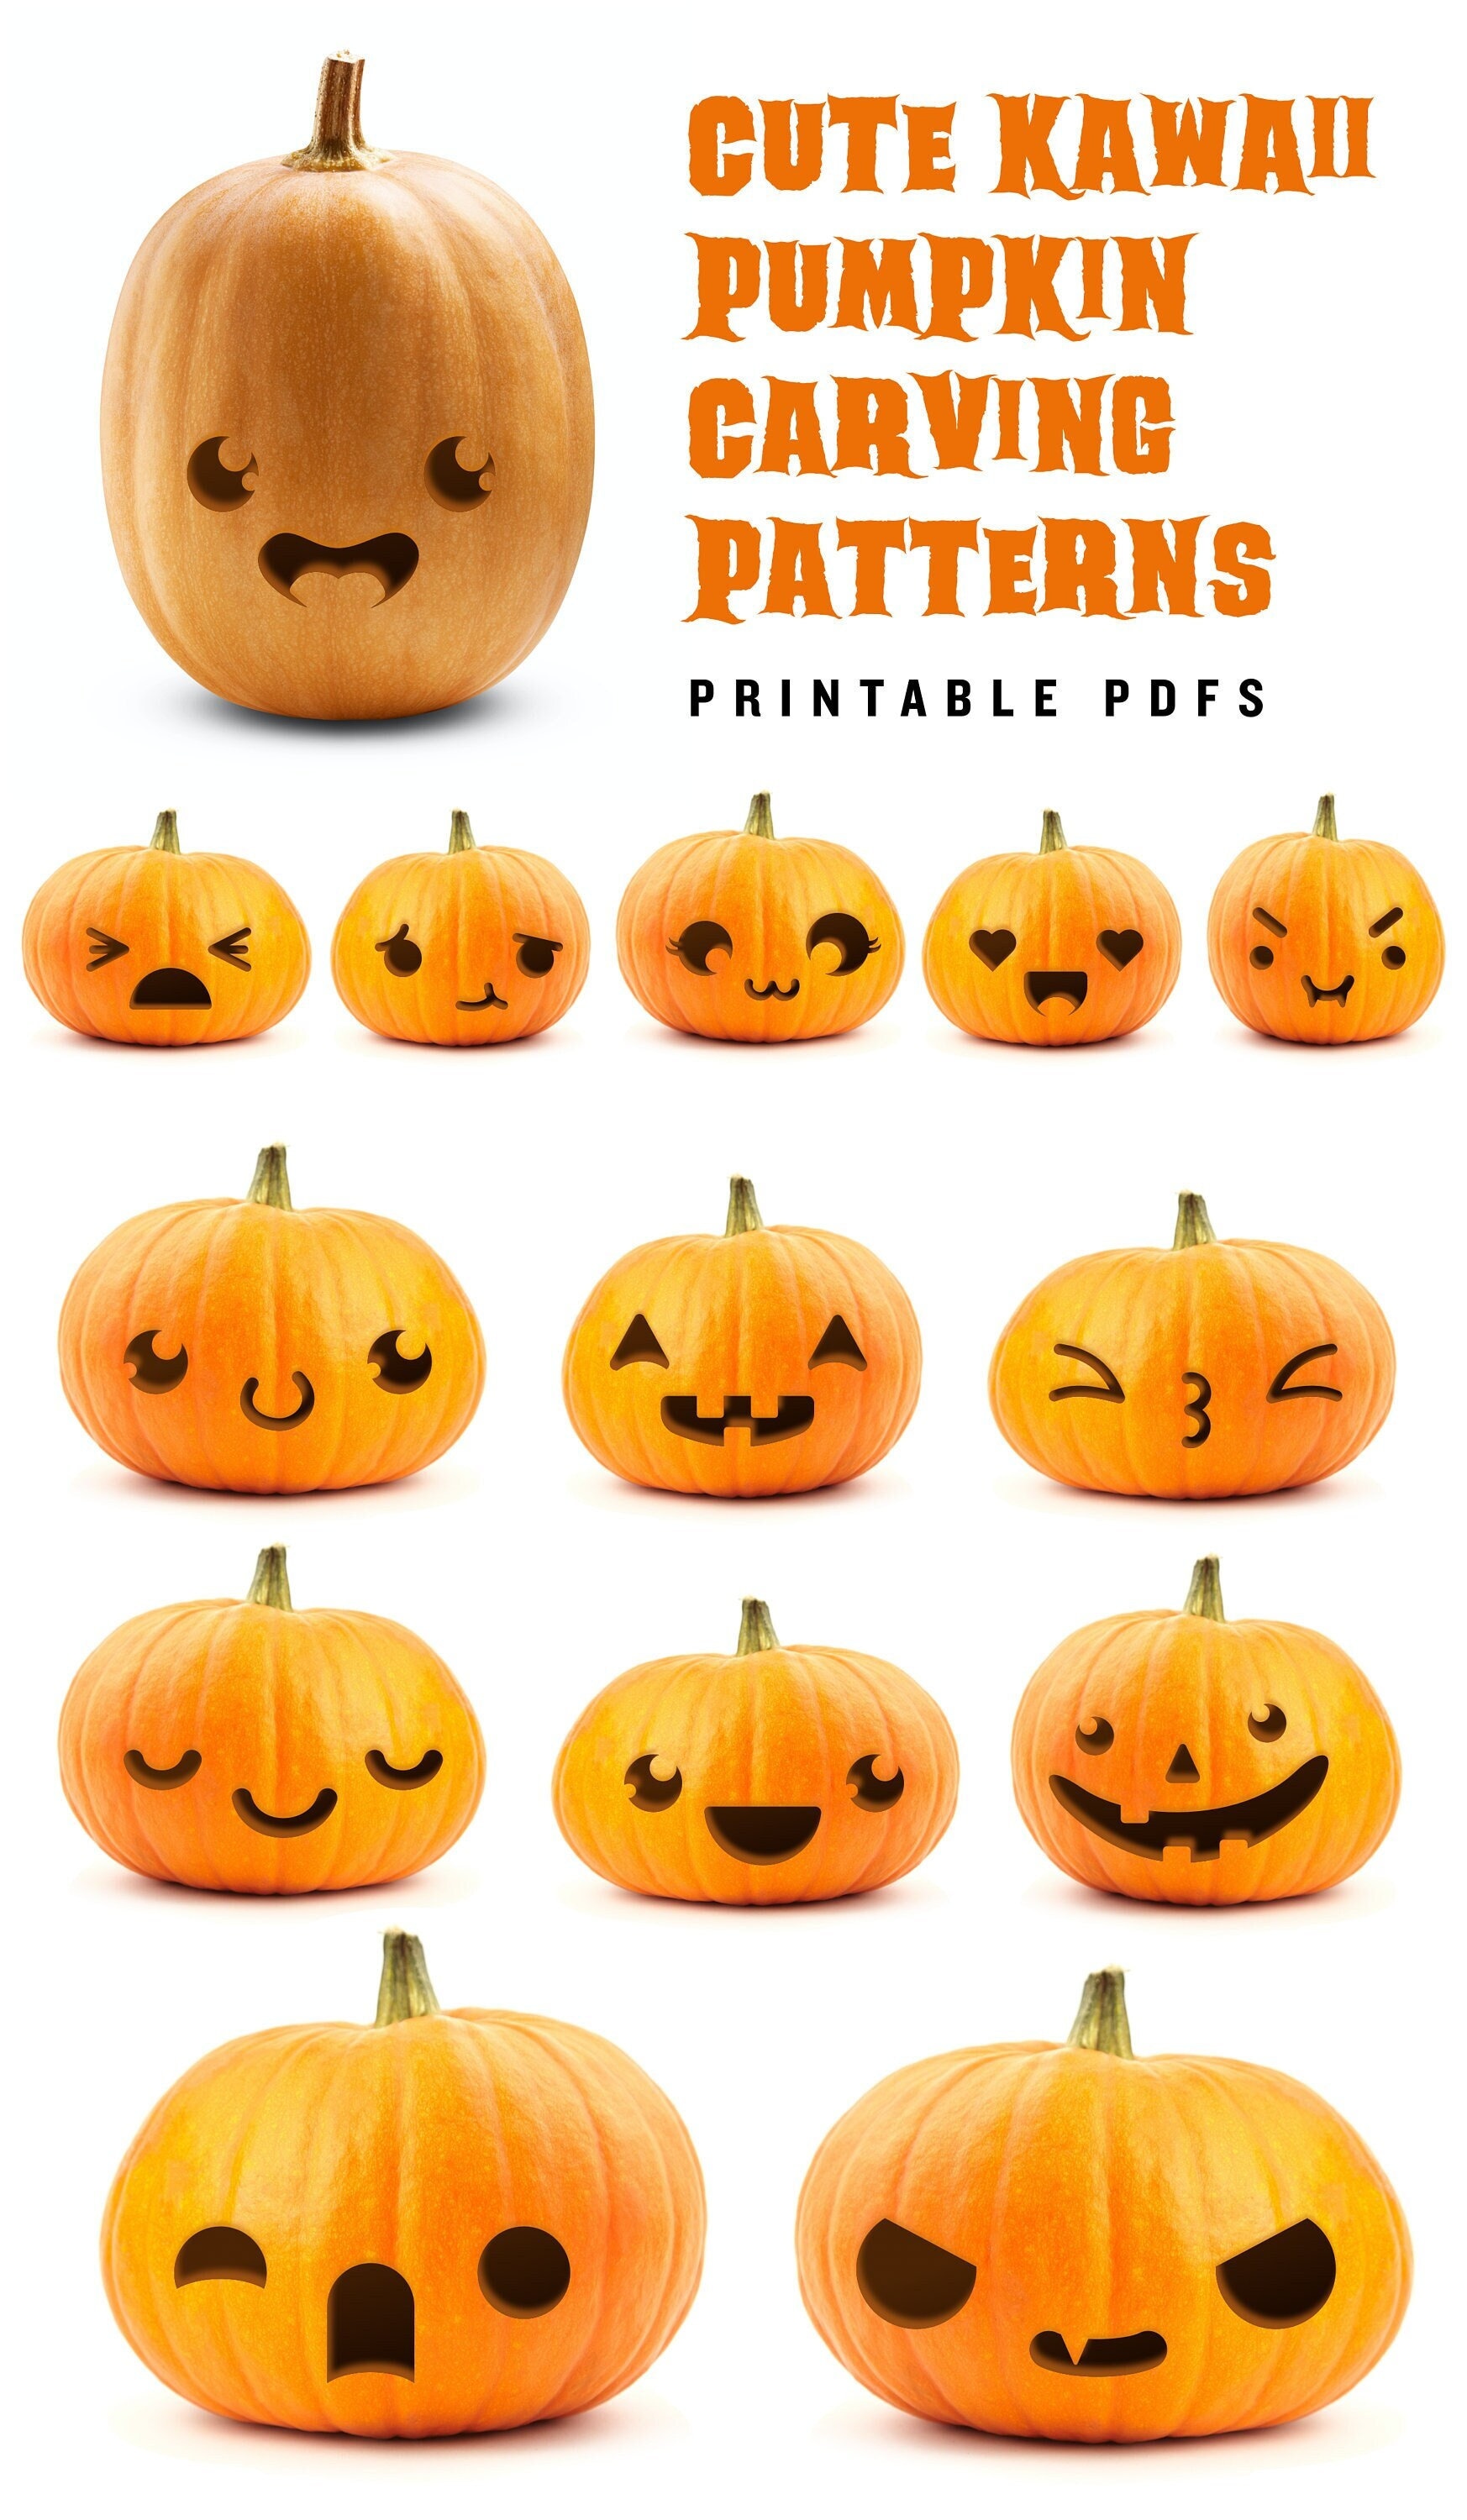 Cute Pumpkin Carving Ideas